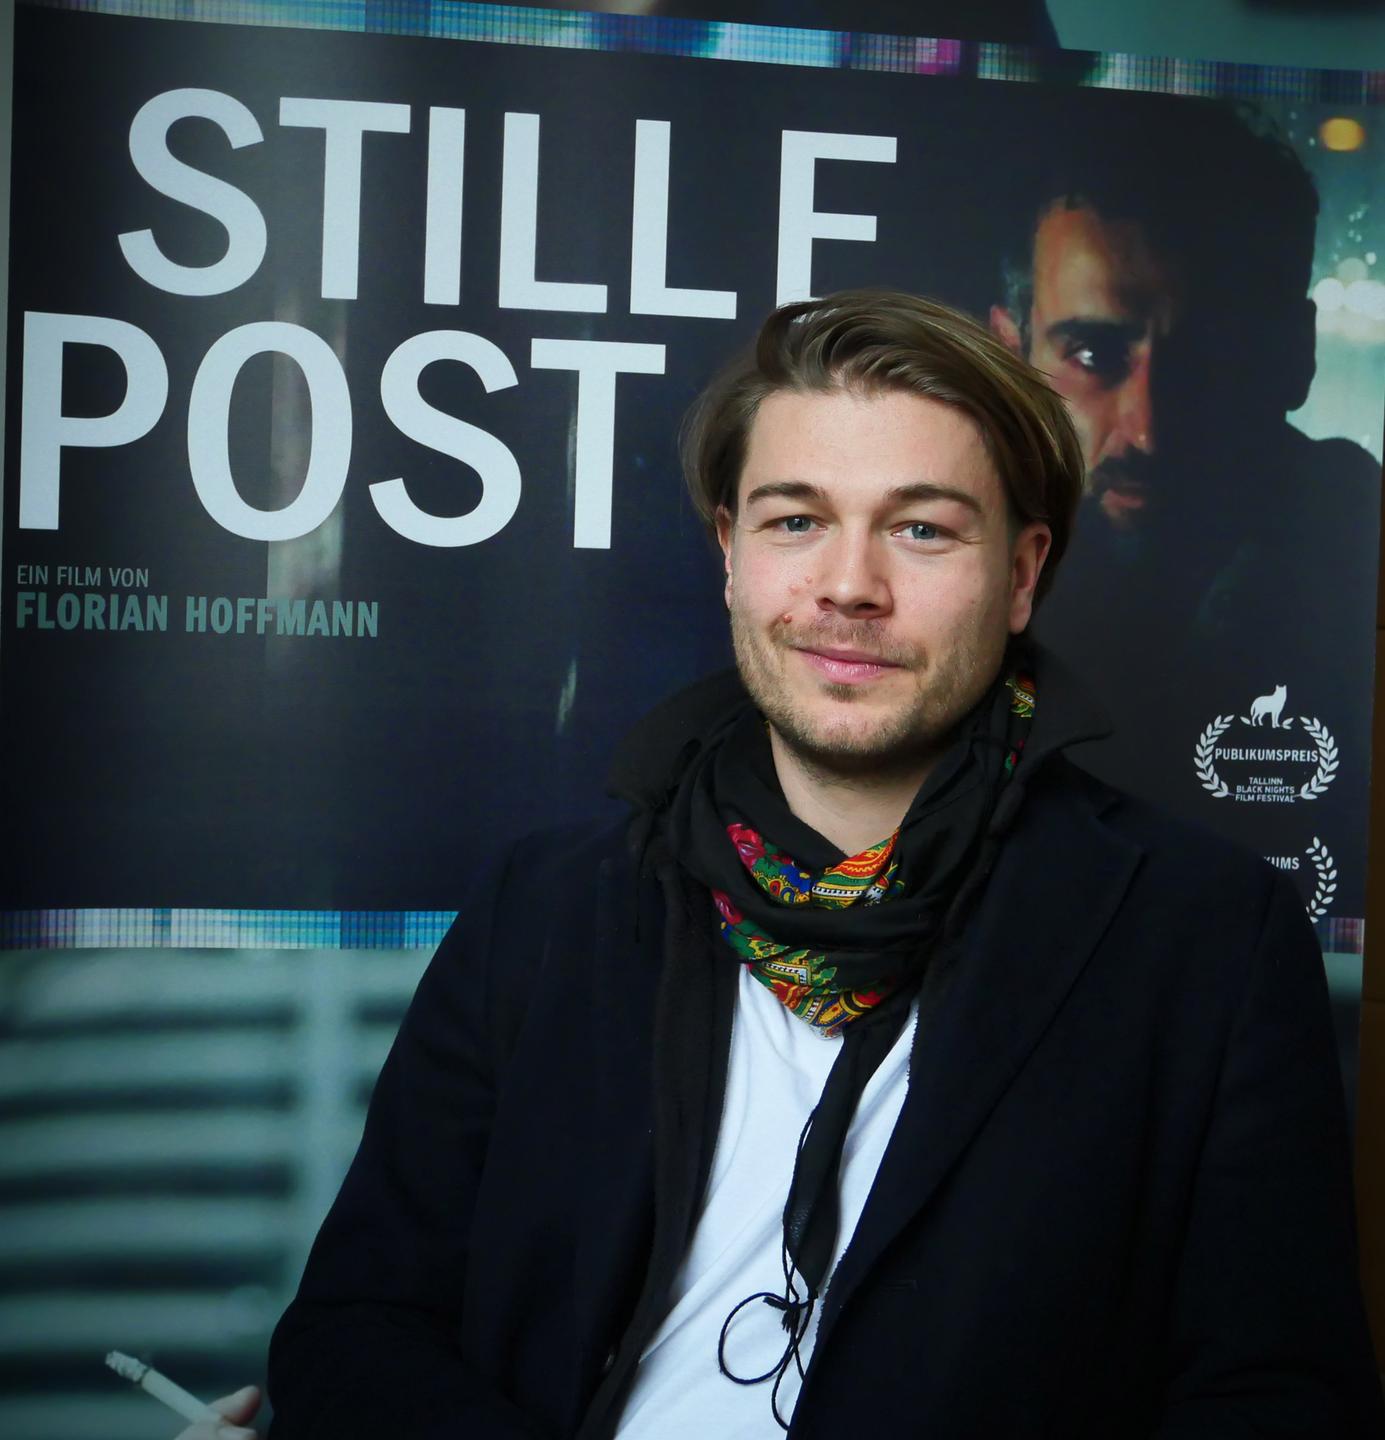 Der Regisseur Florian Hoffmann, aufgenommen in Berlin-Kreuzberg. Er steht vor dem Plakat seines Films "Stille Post". Die Haare trägt er zurückgekämmt und einen Drei-Tage-Bart.